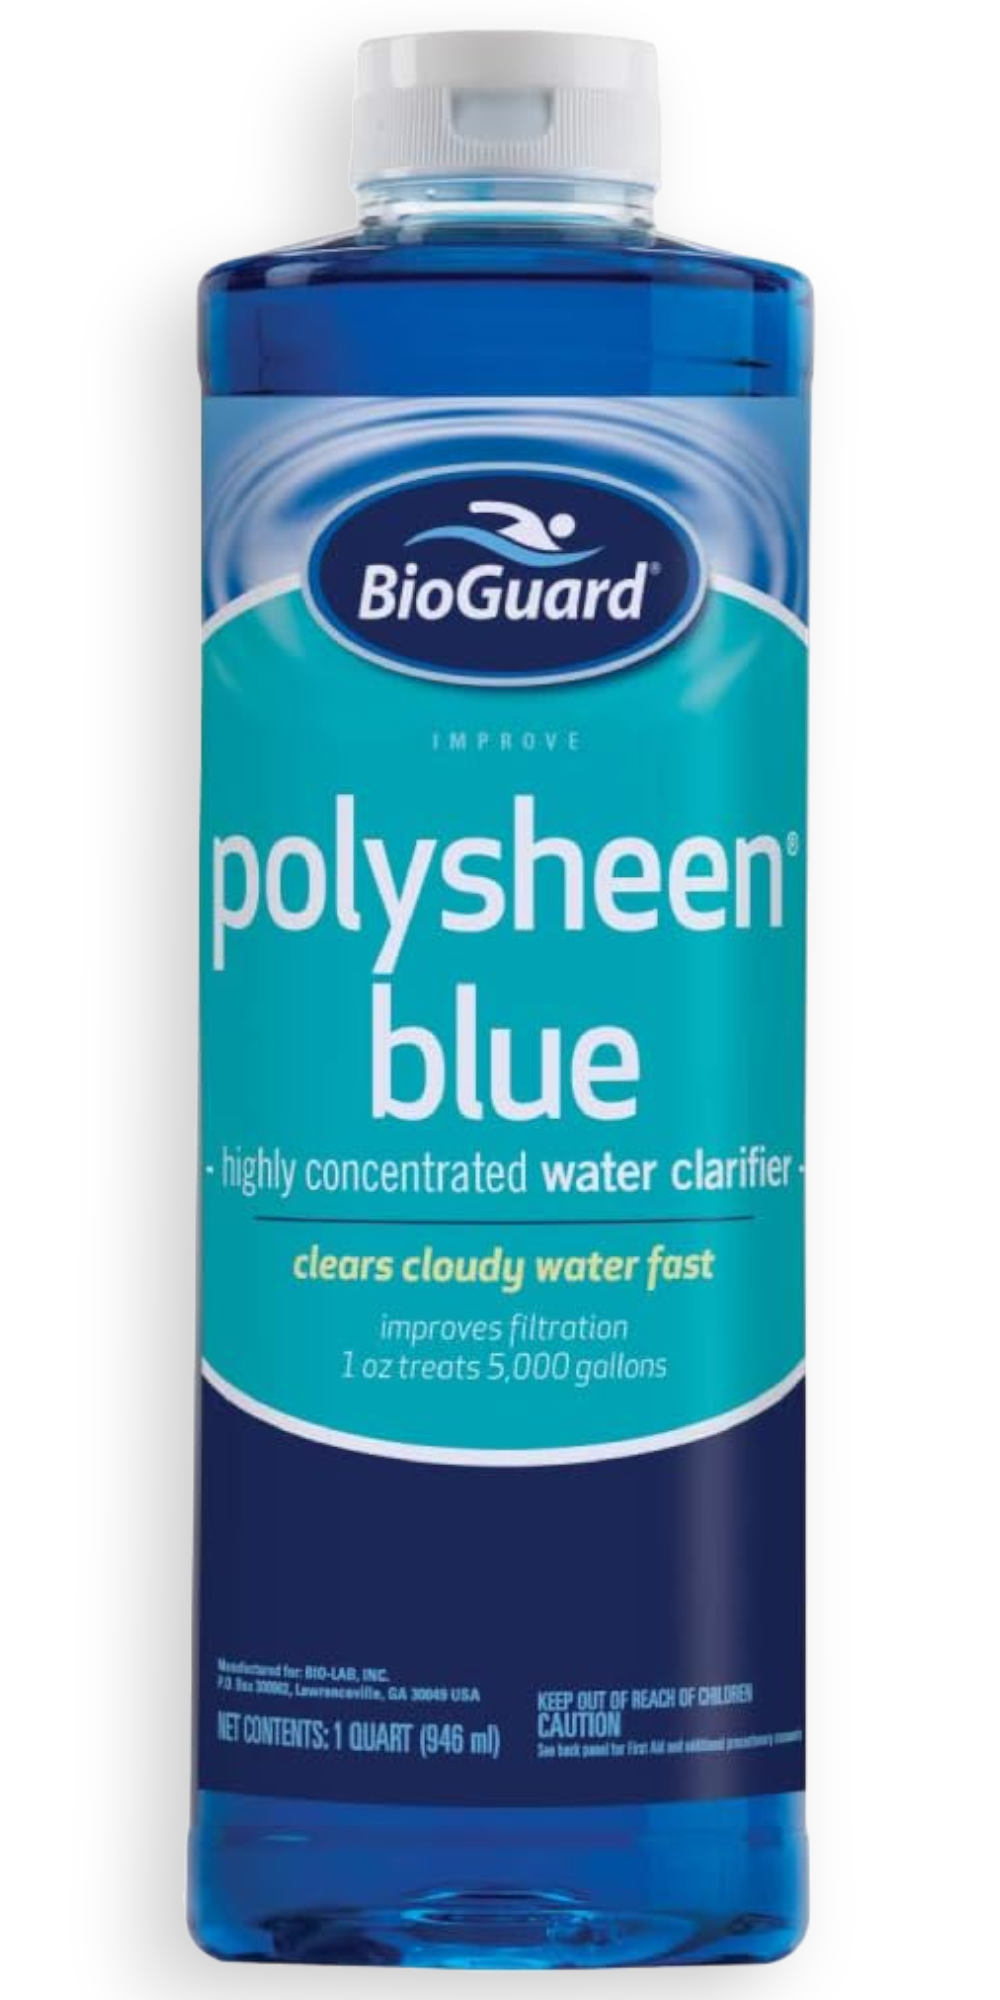 BioGuard Polysheen Blue Clarifier - 1 Quart Pool & Spa Clarifier